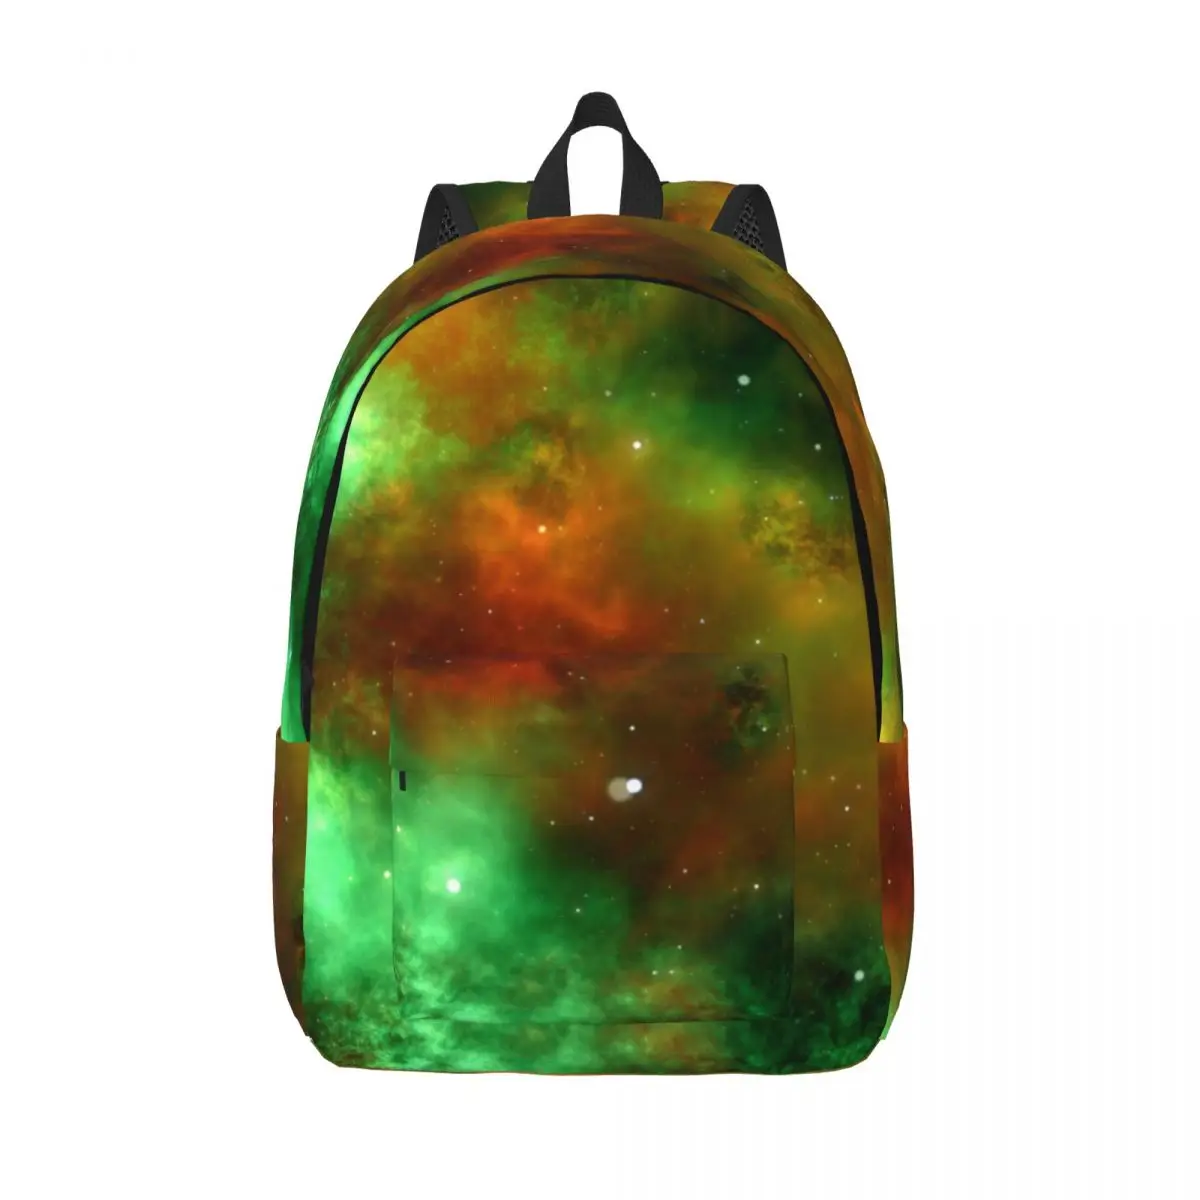 

Рюкзак для детей и родителей, легкая сумка для ноутбука для студентов с изображением космоса и научной фантастики, зеленого цвета